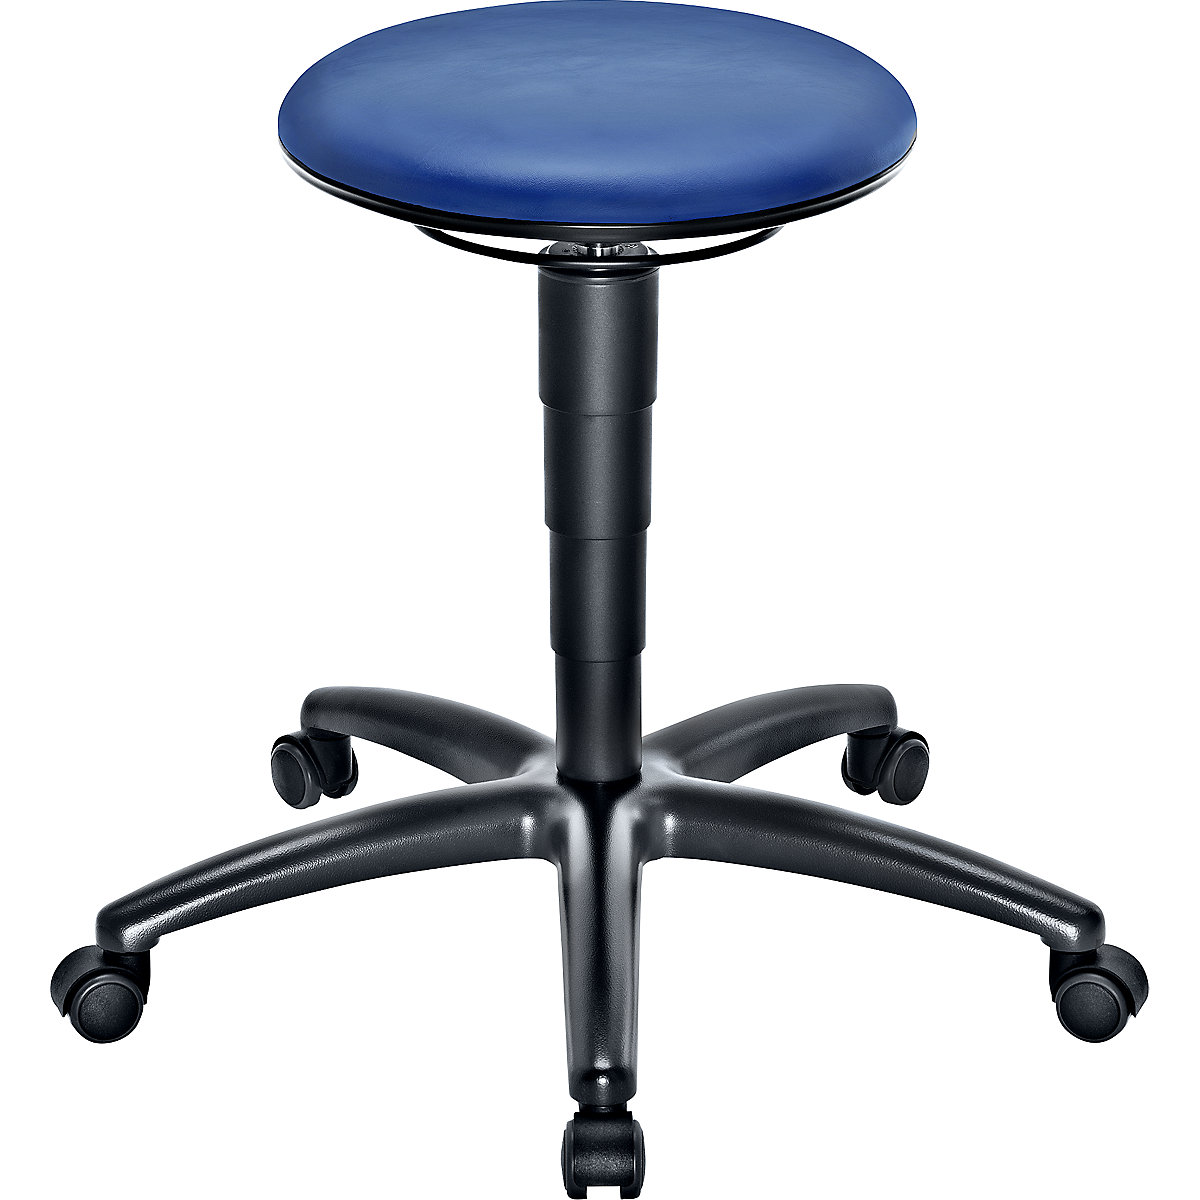 Pracovní stolička s přestavováním výšky plynovým pístem – eurokraft pro, sedák z modré koženky, s kolečky-1